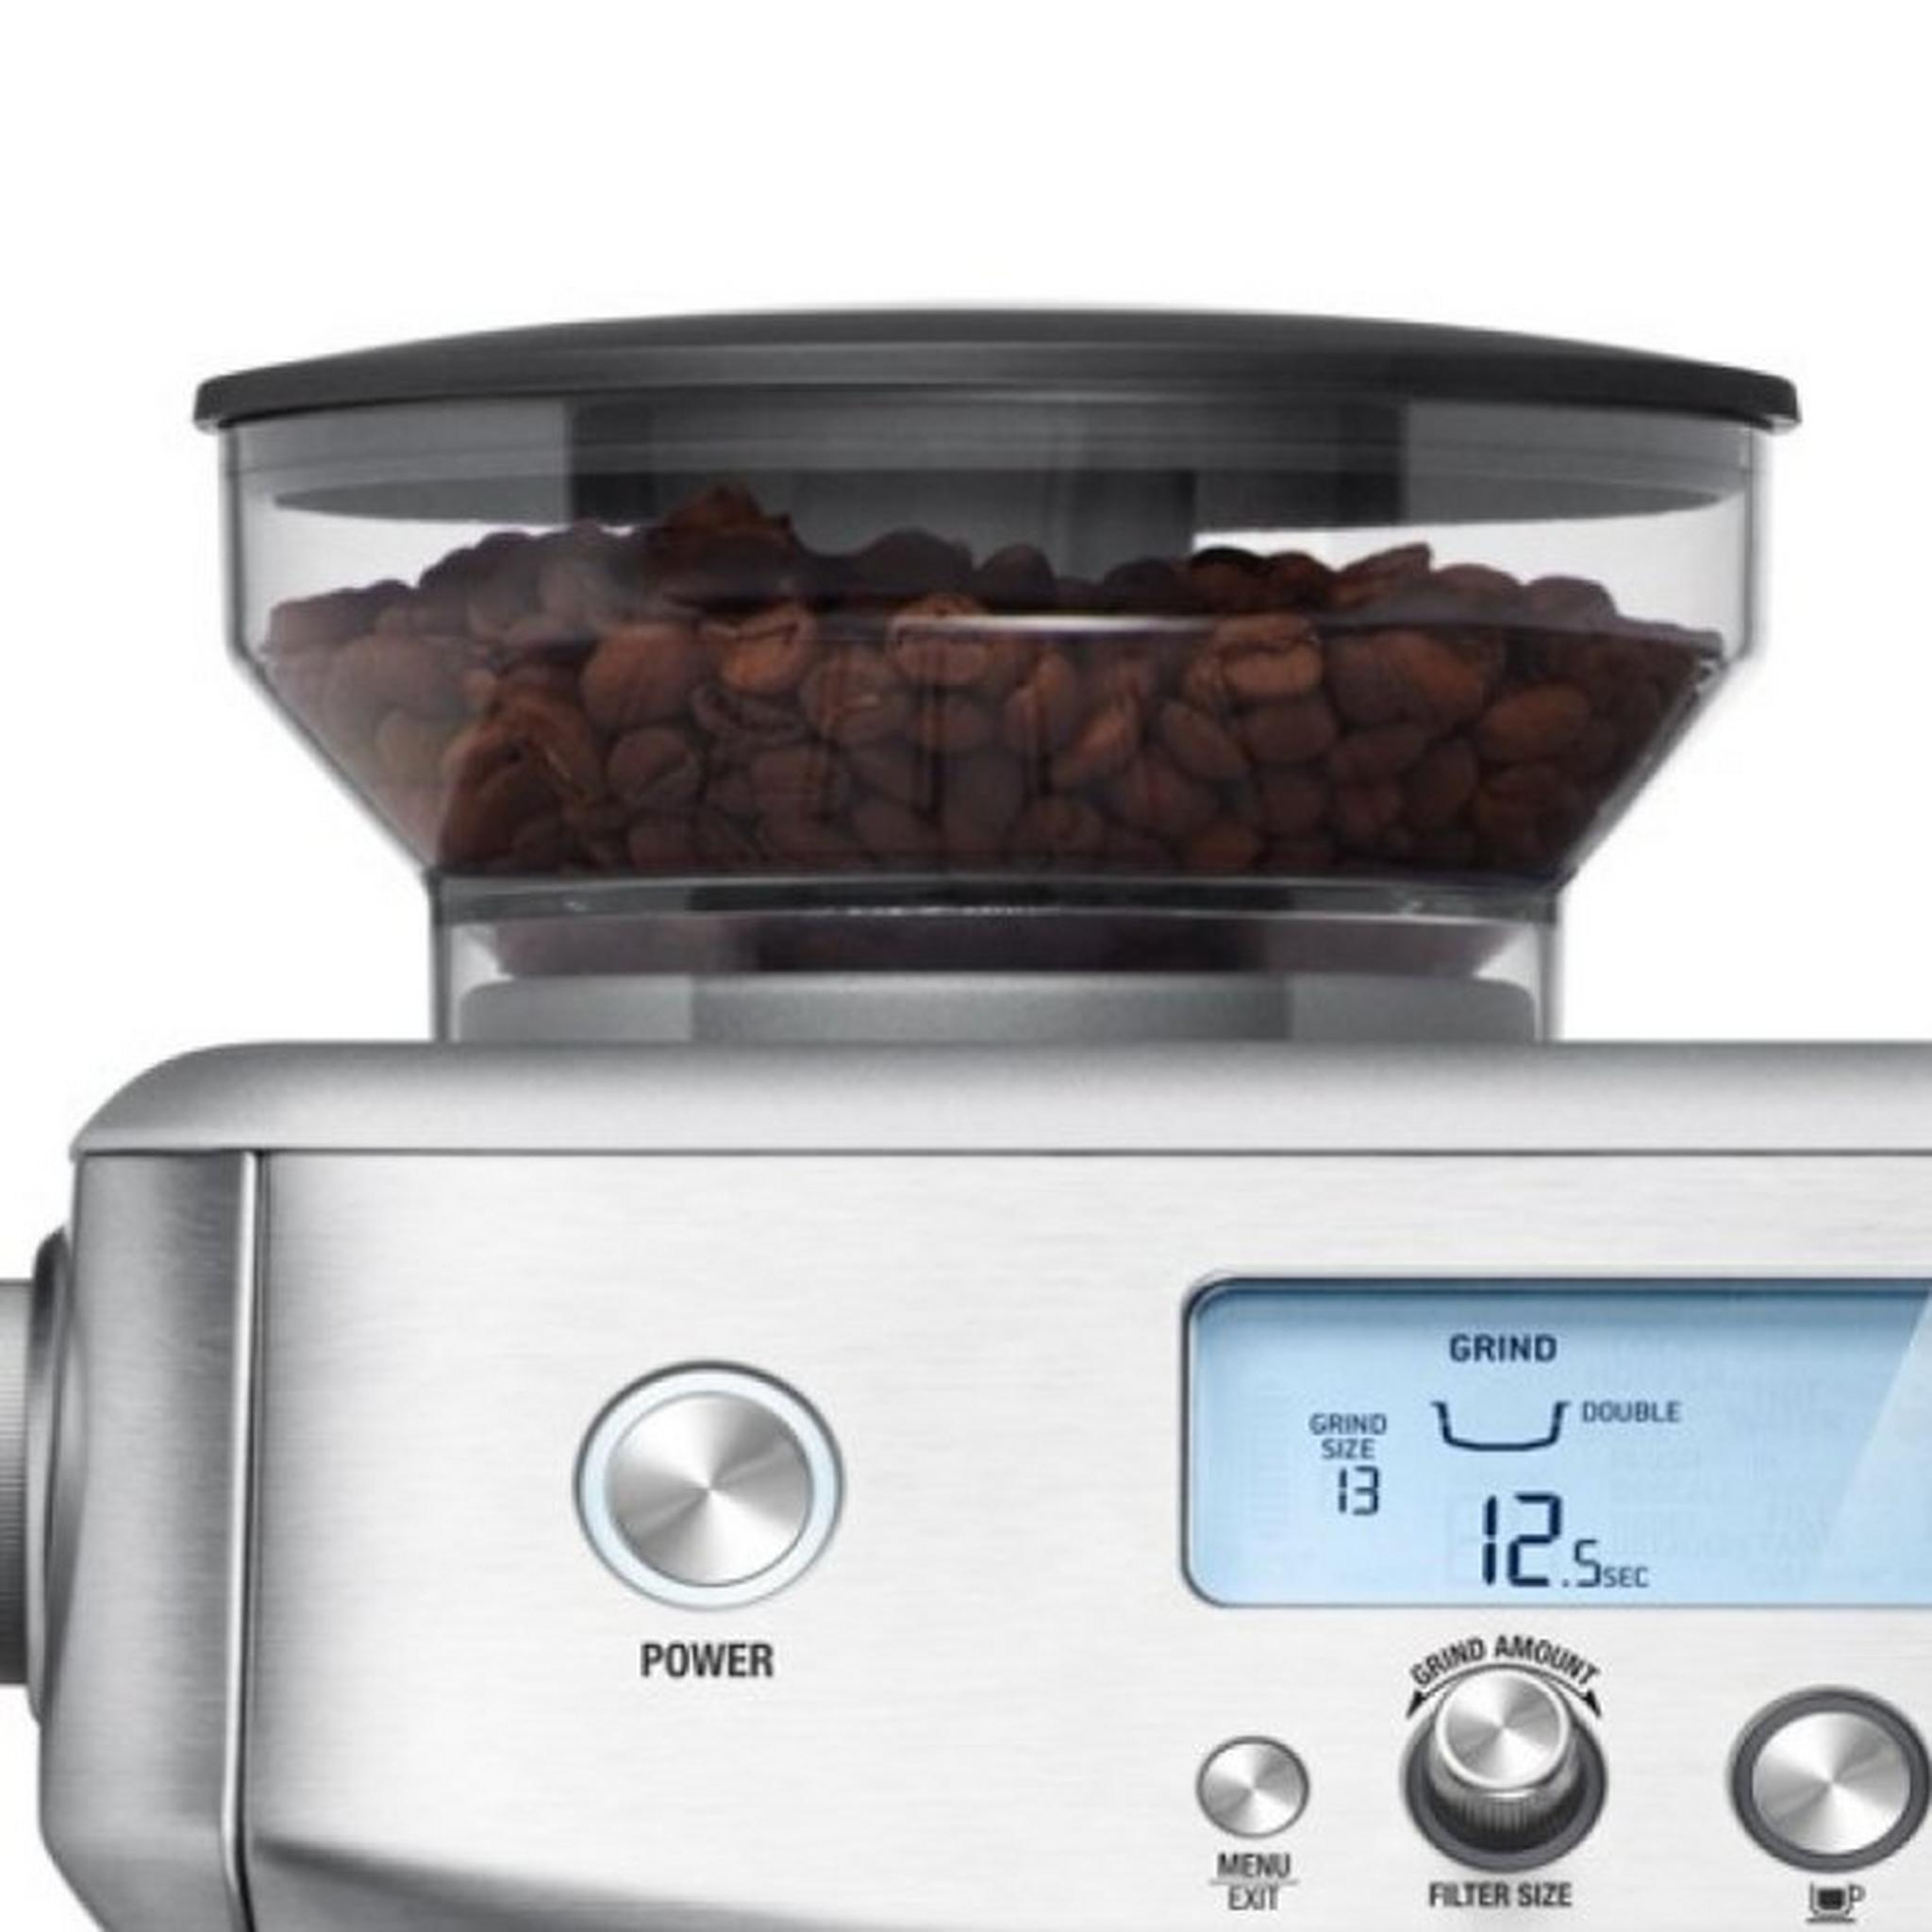 Sage Barista Pro 1680W 2L Coffee Maker (SES878BSS)